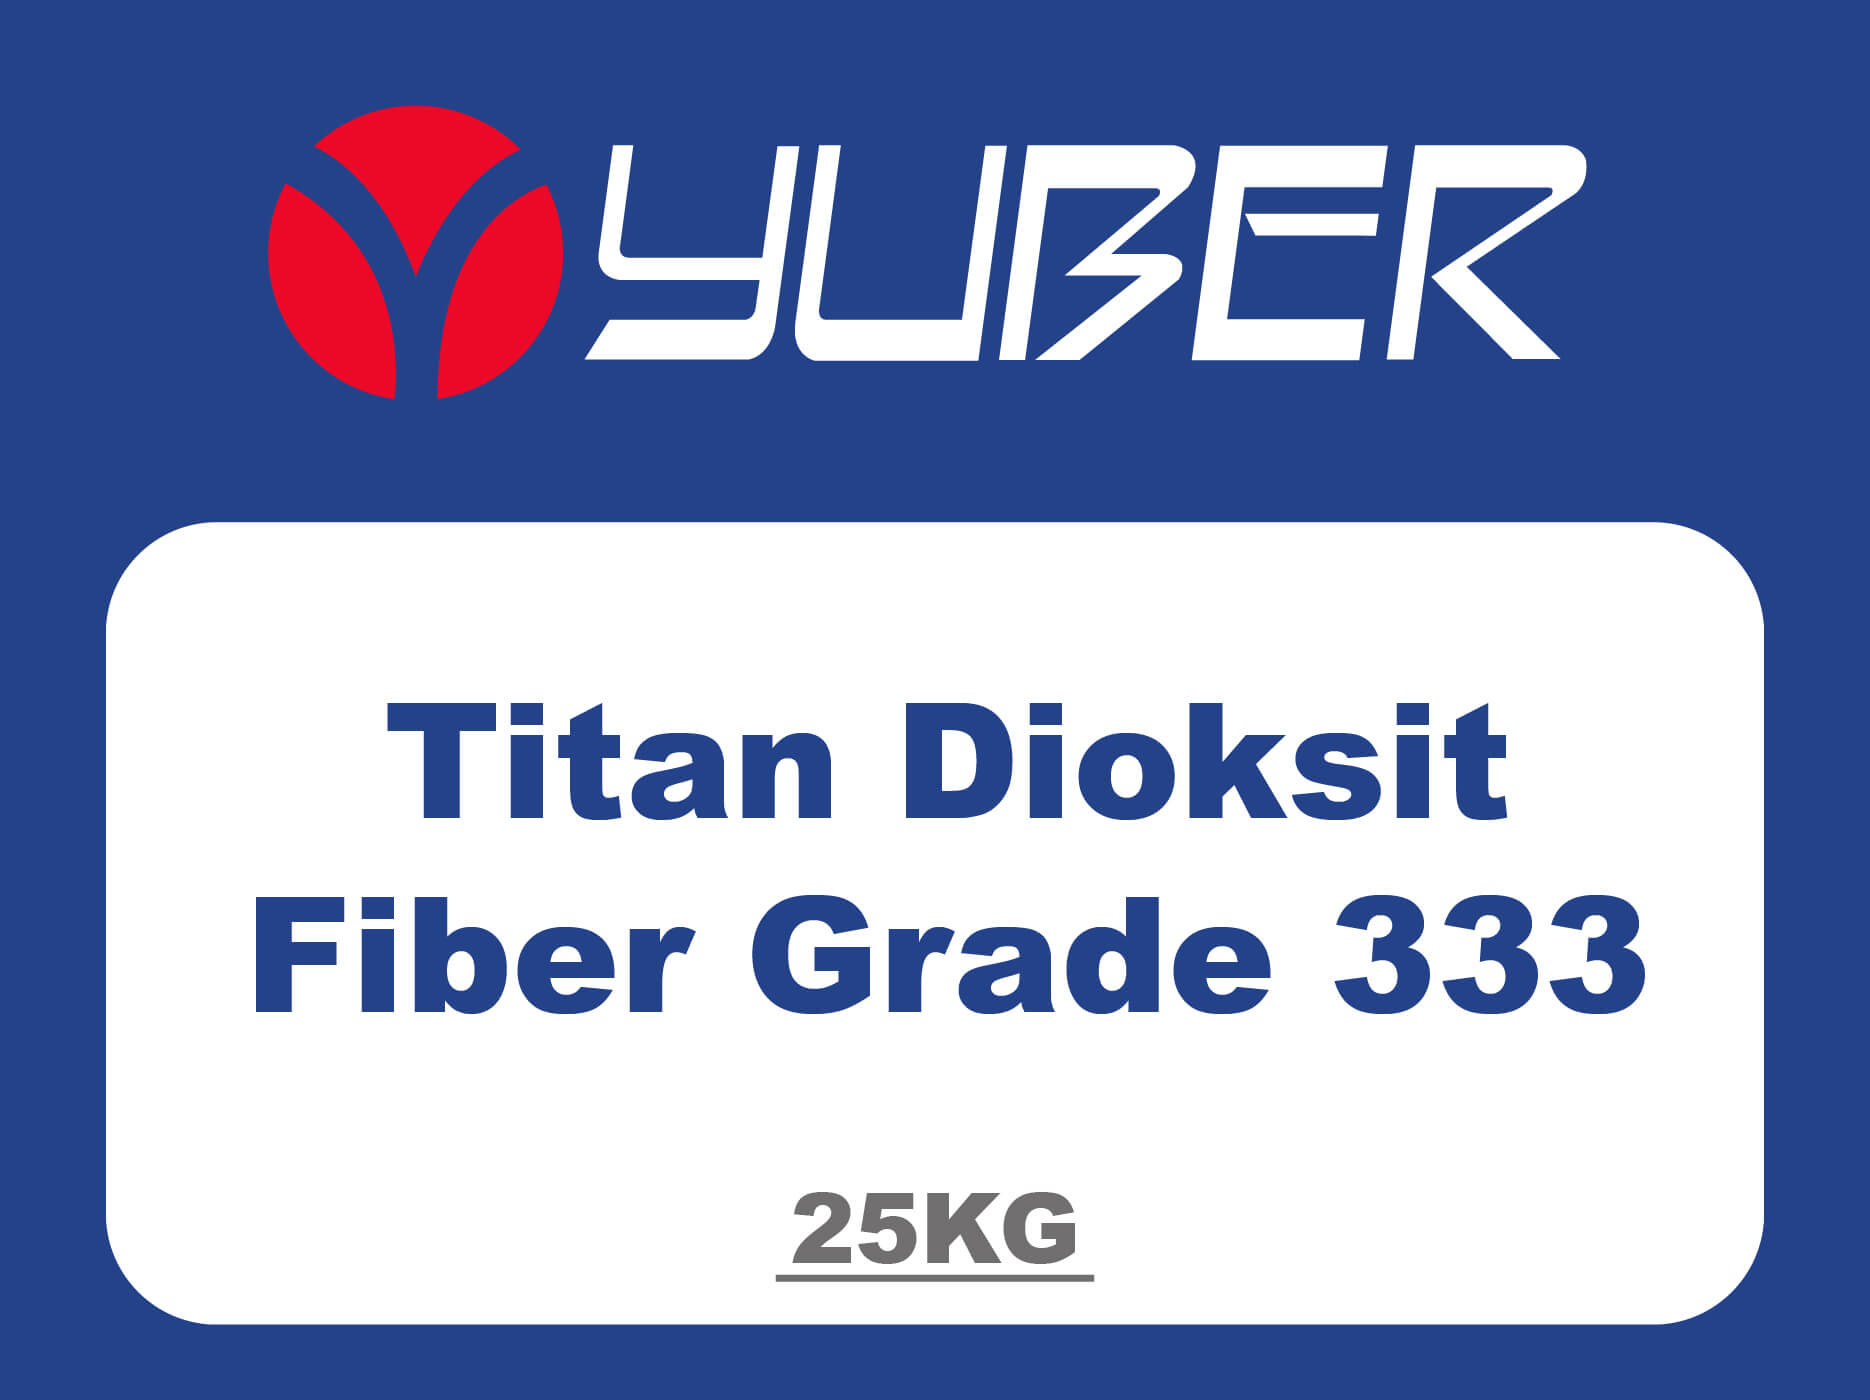 Titan Dioksit Fiber Grade 333 Yuber Kimya